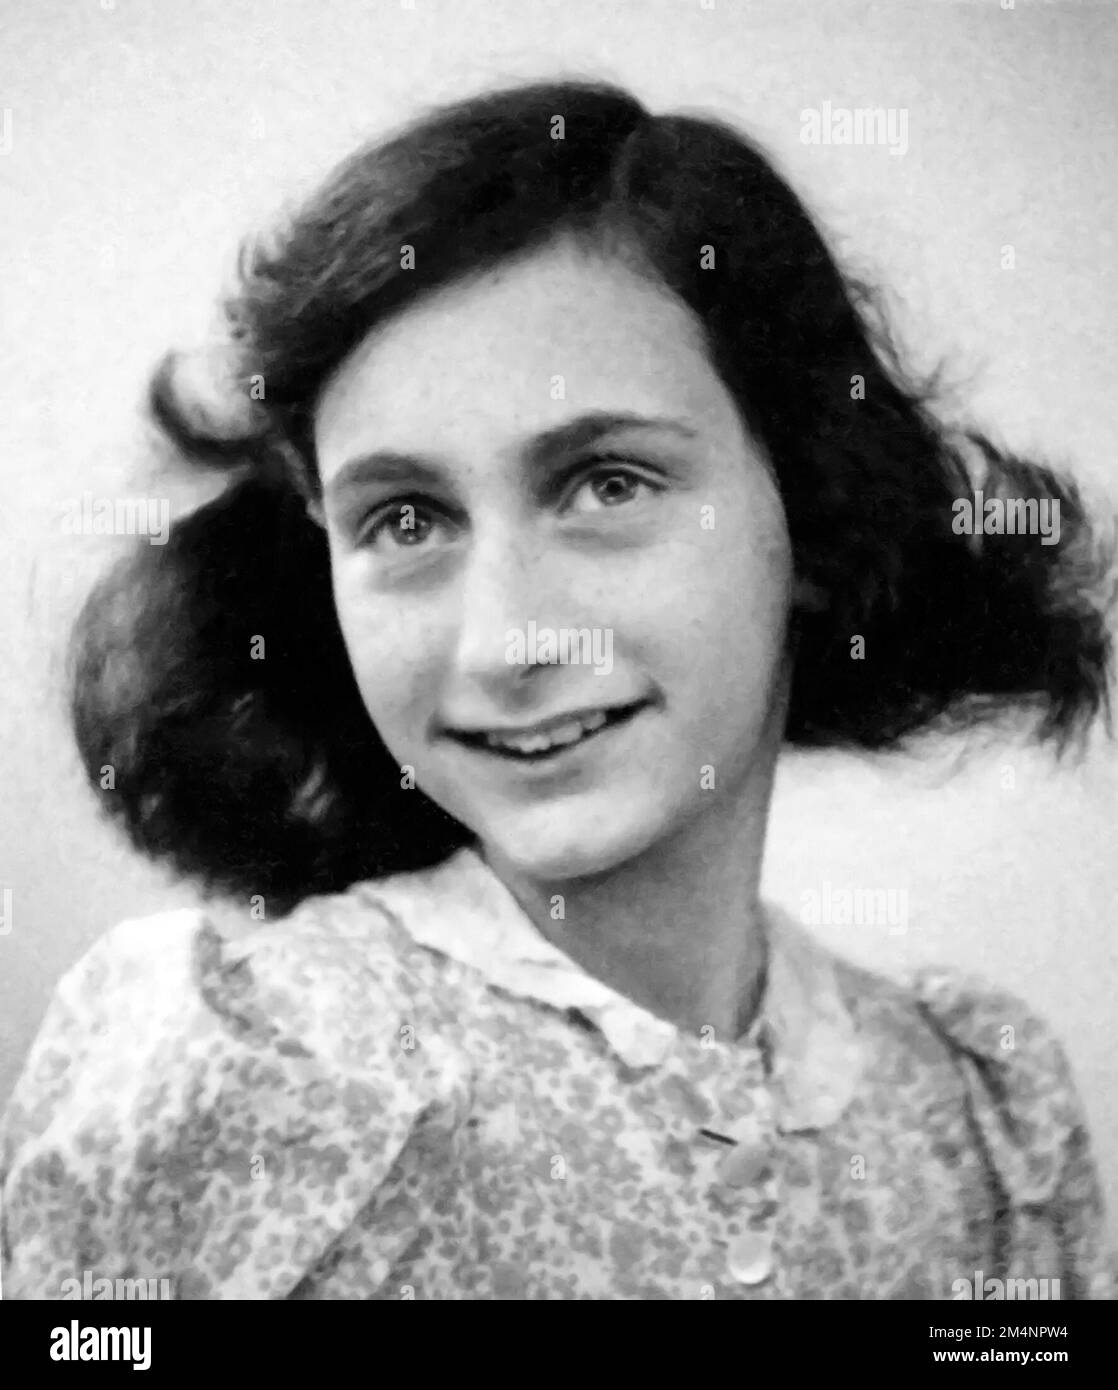 Anne Frank. Passfoto von Annelies Marie 'Anne' Frank (1929-1945), das junge jüdische Mädchen, das sein Tagebuch über das Leben unter der Nazibesetzung berühmt machte, 1942 Stockfoto